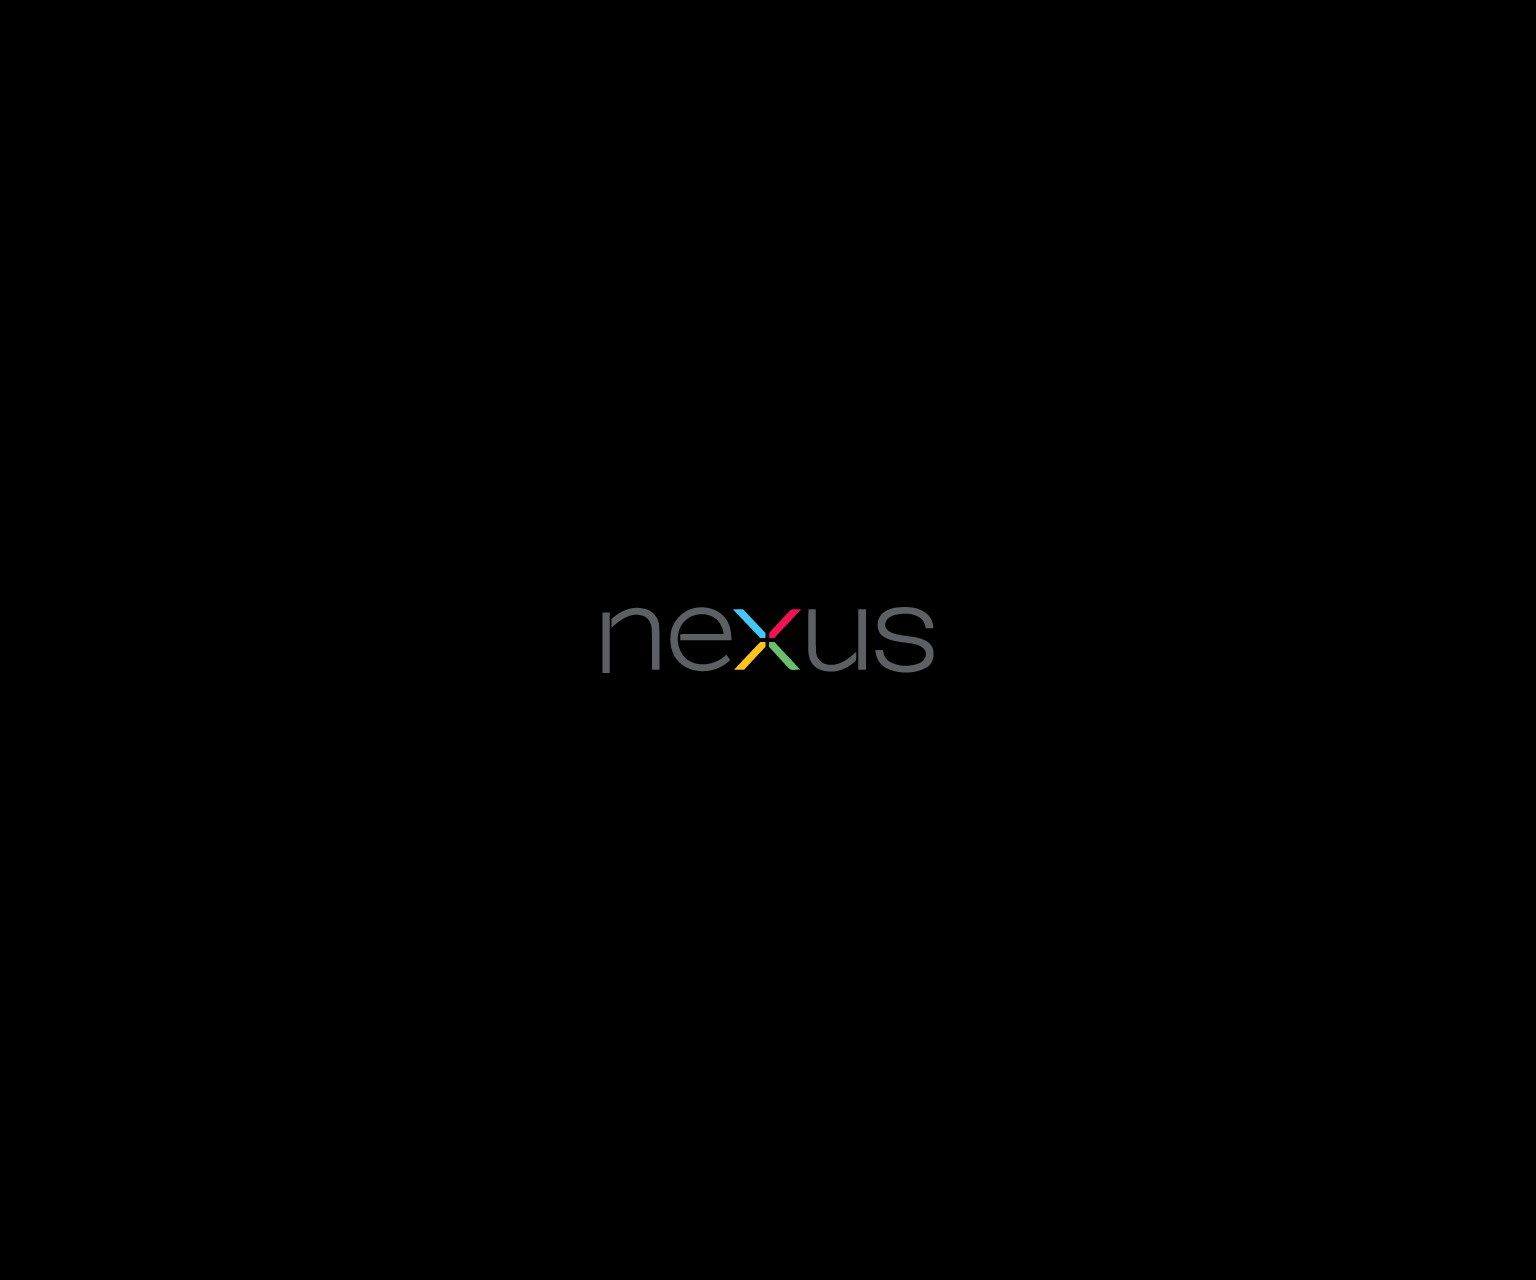 Nexus Wallpaper 19 - Best Wallpaper Collection